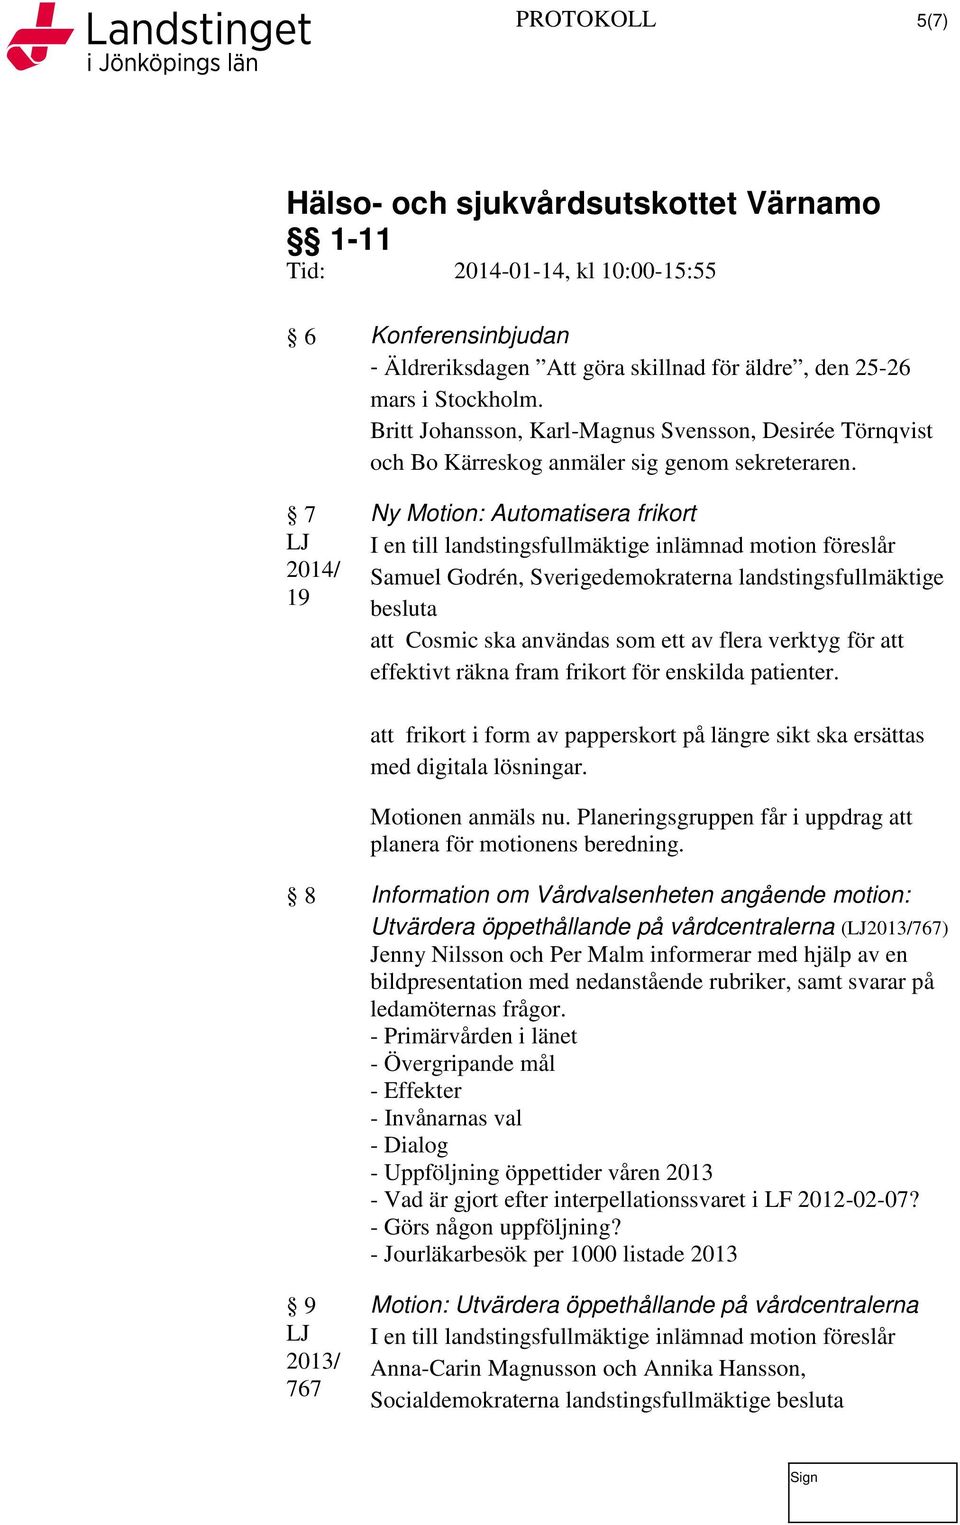 7 LJ 2014/ 19 Ny Motion: Automatisera frikort I en till landstingsfullmäktige inlämnad motion föreslår Samuel Godrén, Sverigedemokraterna landstingsfullmäktige besluta att Cosmic ska användas som ett